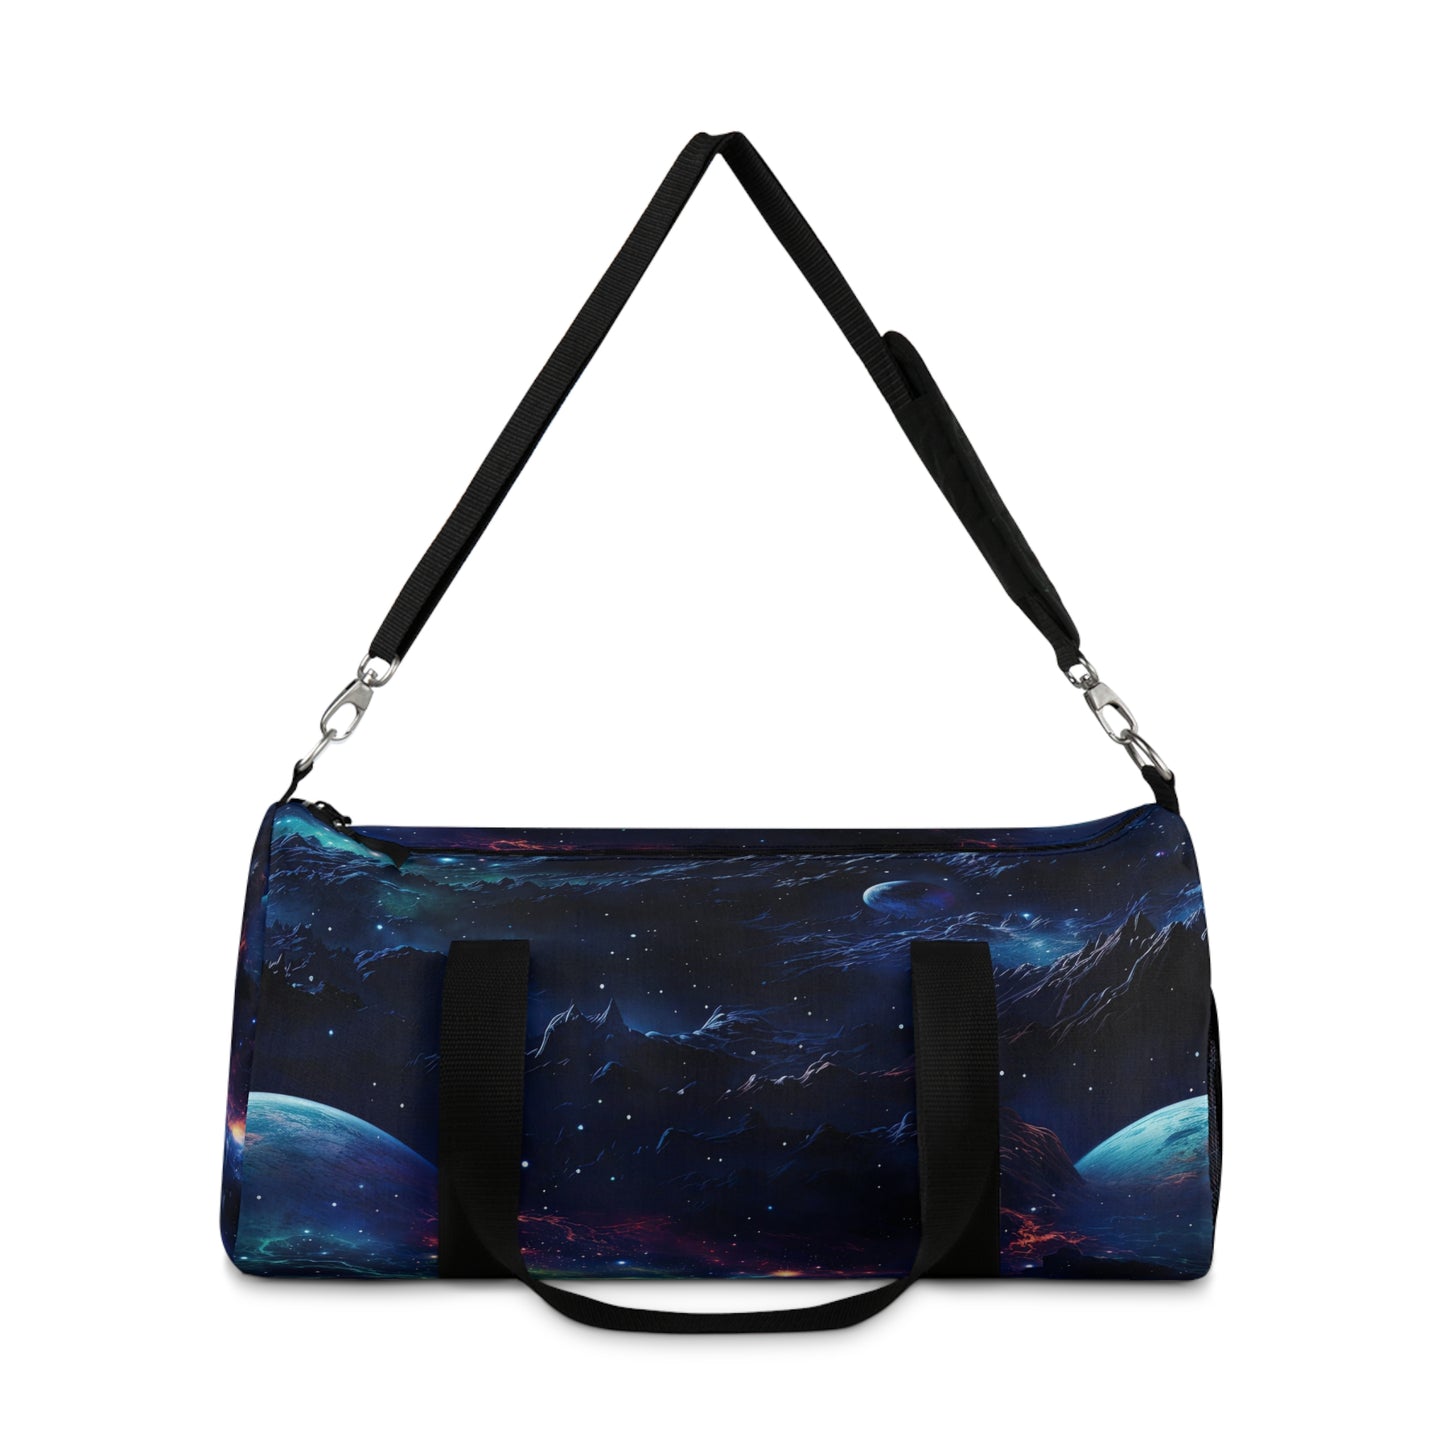 Duffel Bag with Custom Galaxy Design